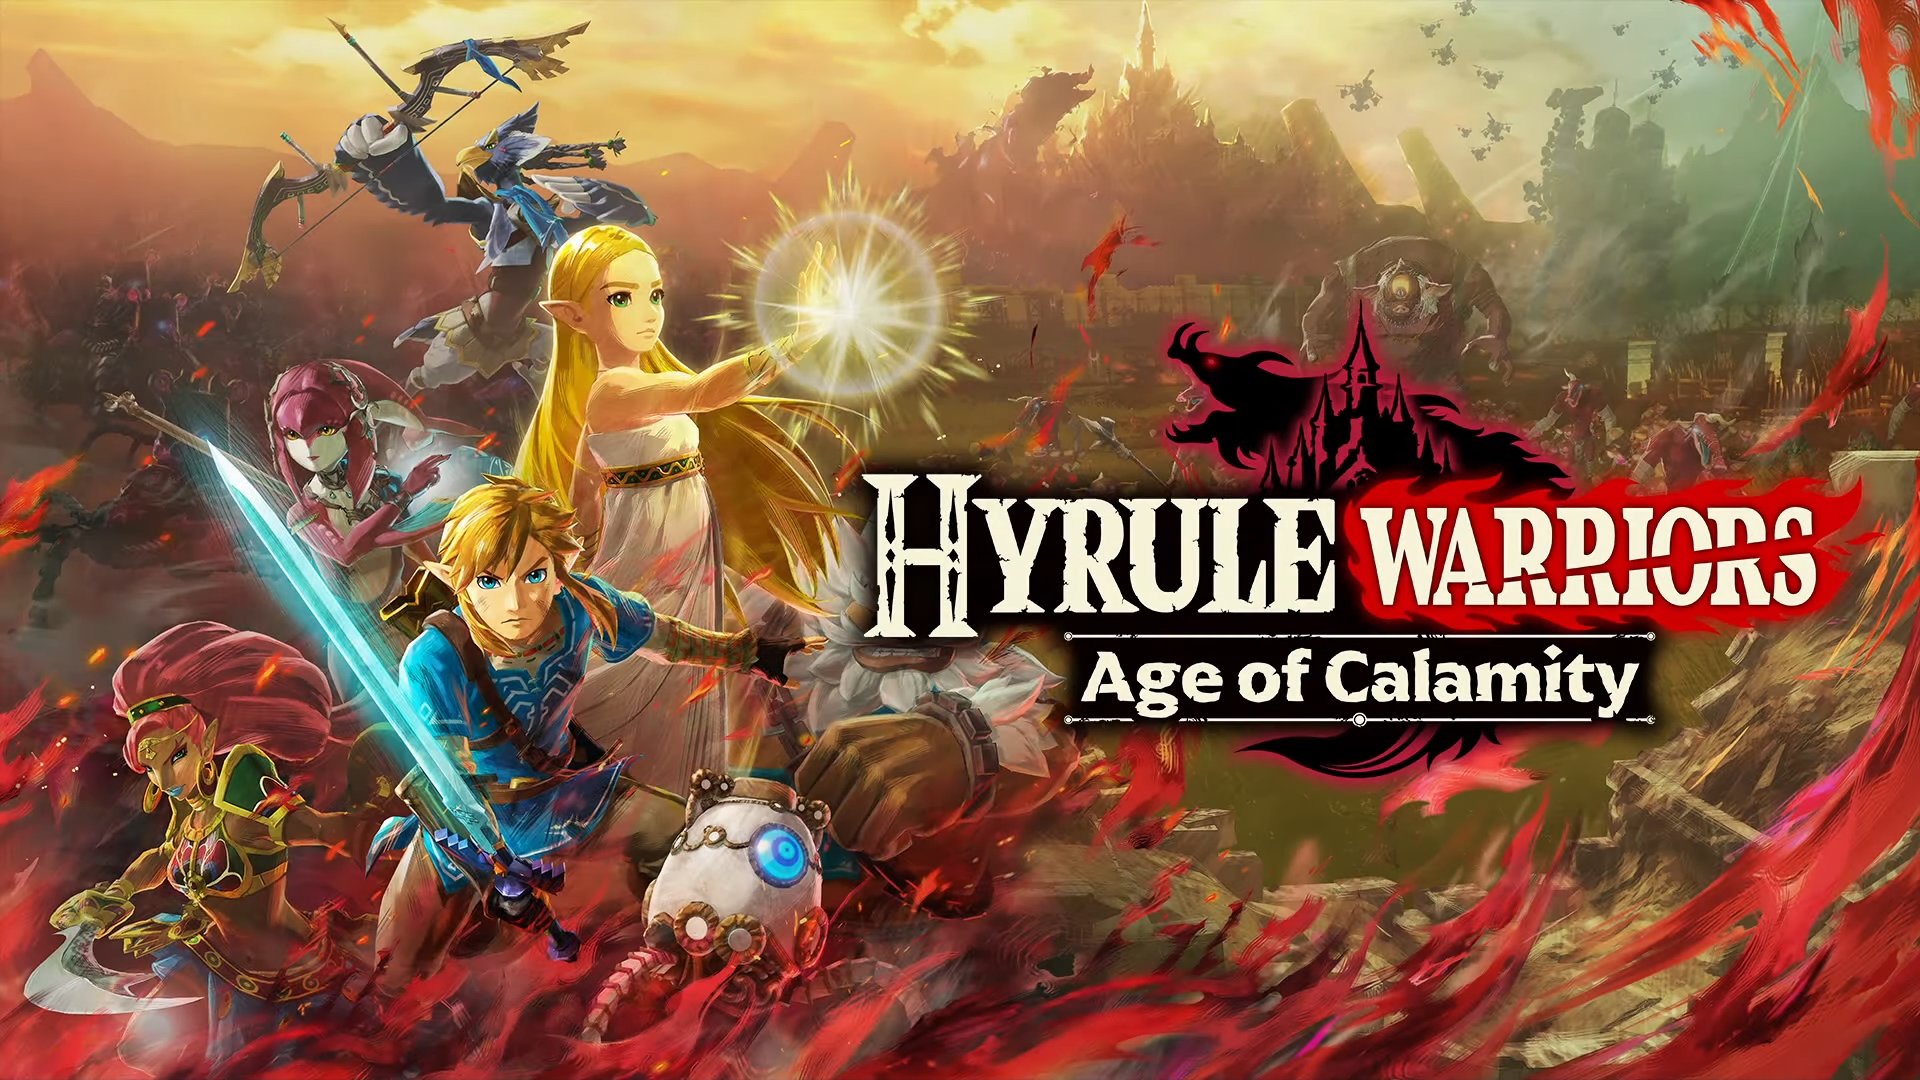 Nintendo annonce Hyrule Warriors : L'Ère du Fléau, un prequel à Breath of the Wild, sur Switch